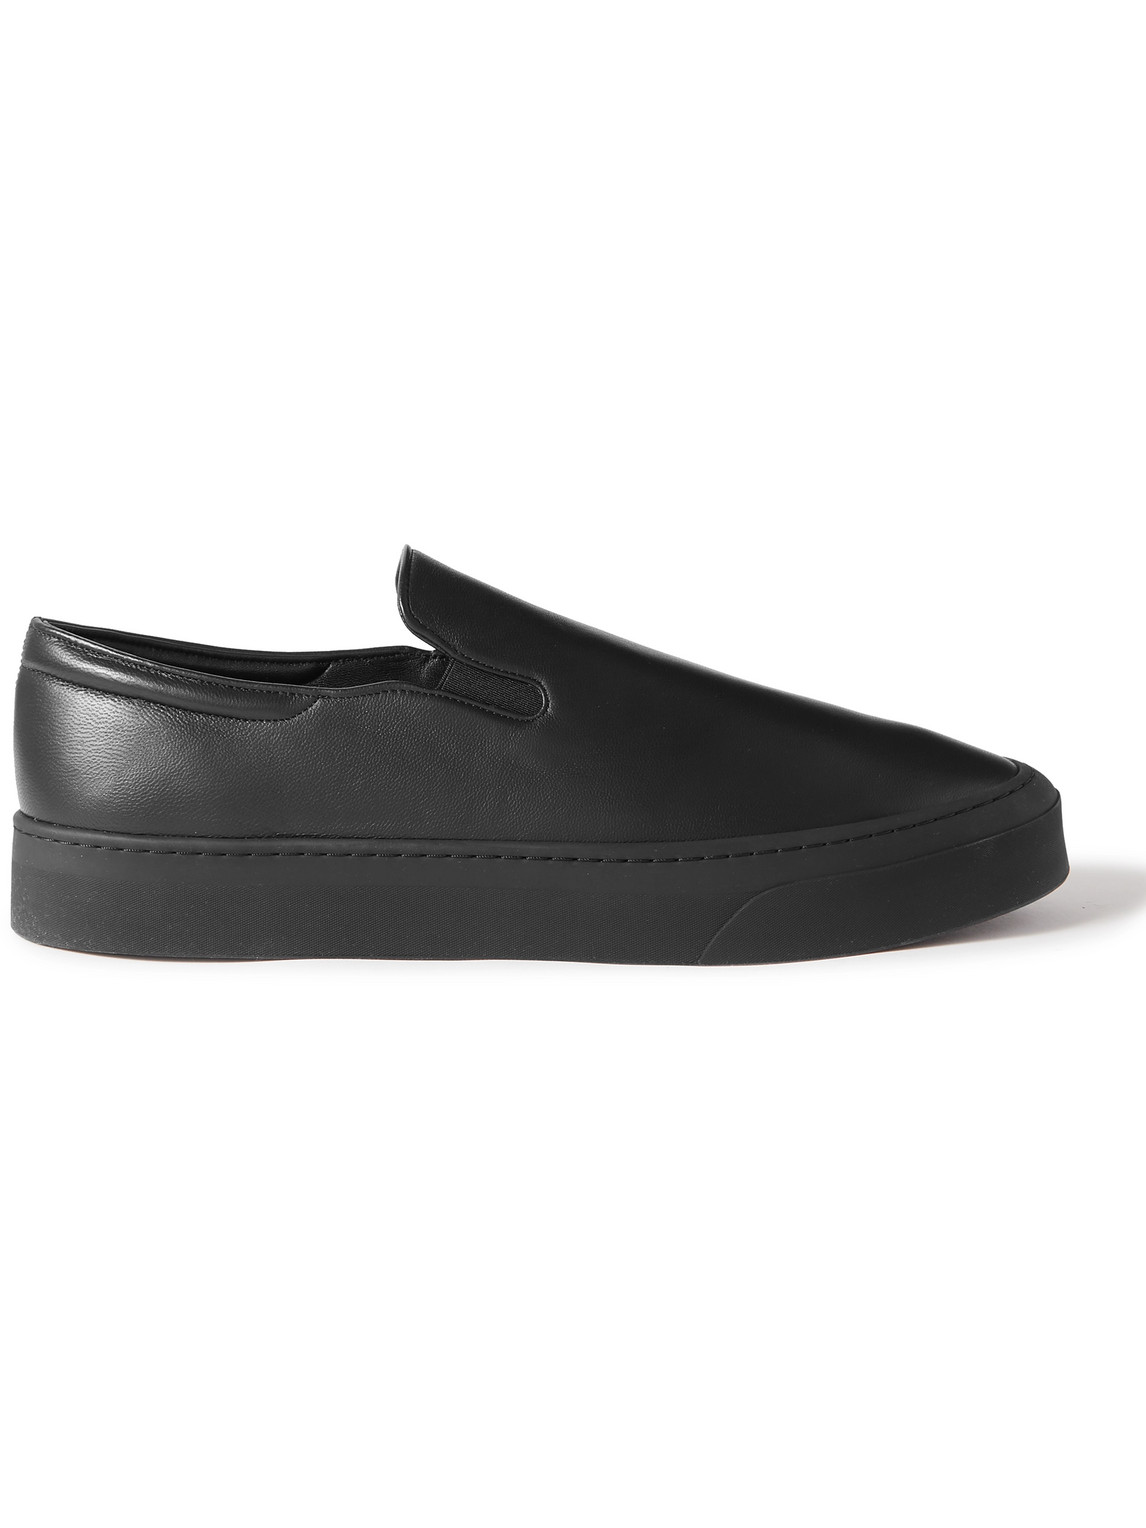 The Row - Dean Leather Slip-On Sneakers - Men - Black - EU 42.5 von The Row